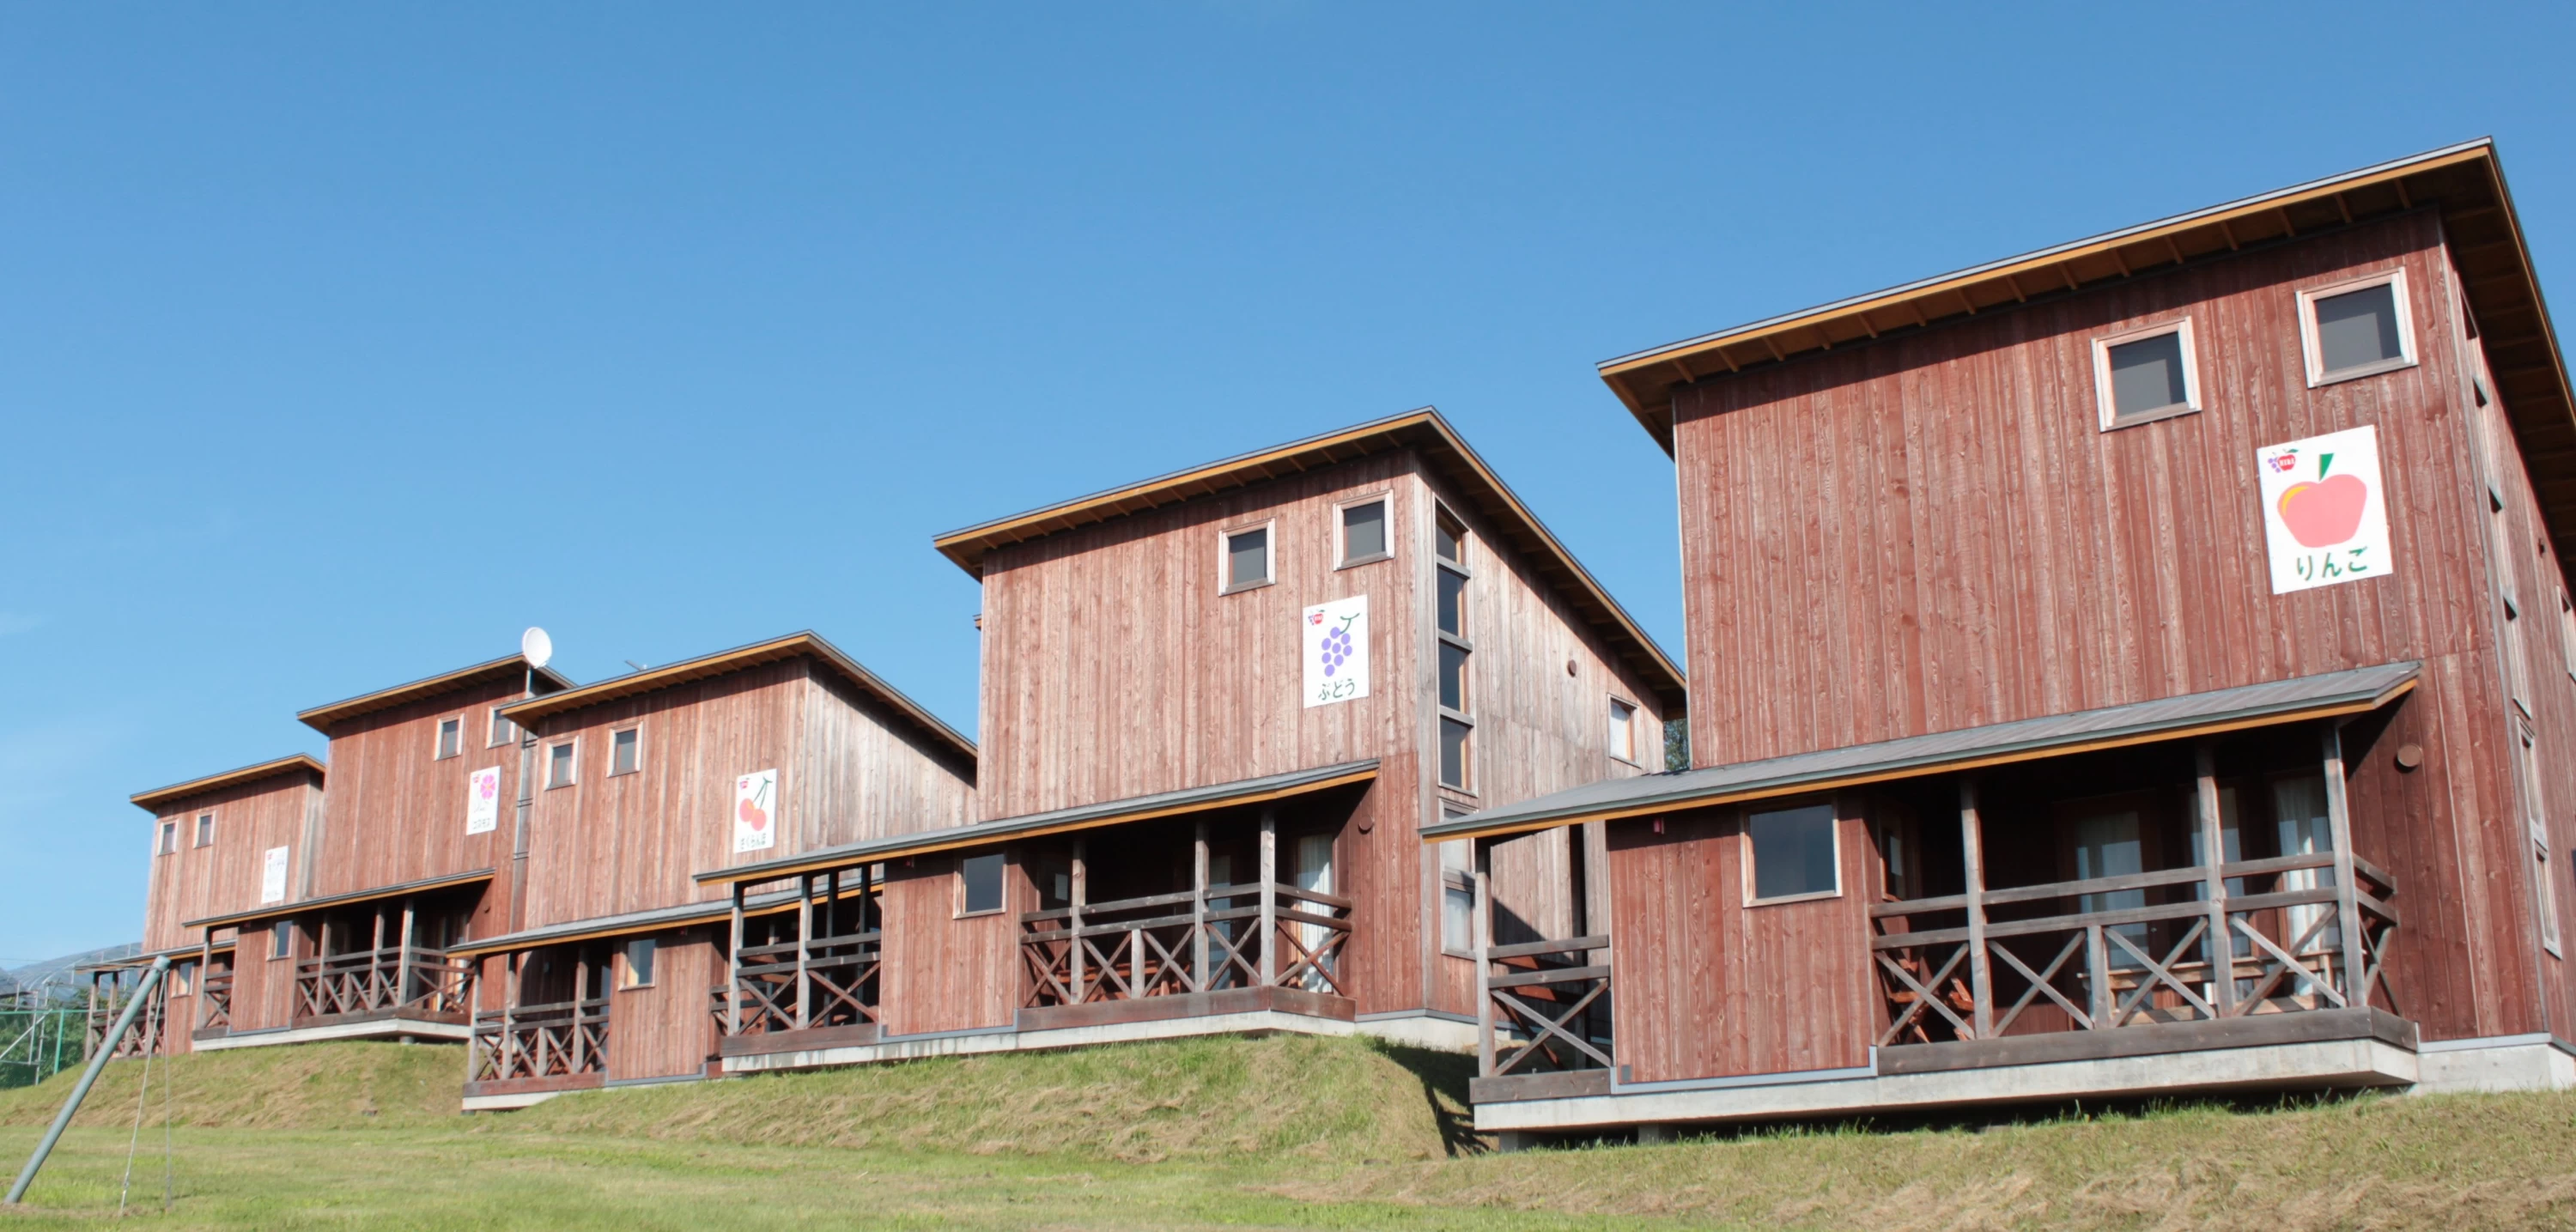 木造コテージは、宿泊施設の少ない仁木町のなかでもリーズナブルに泊まれる穴場として人気